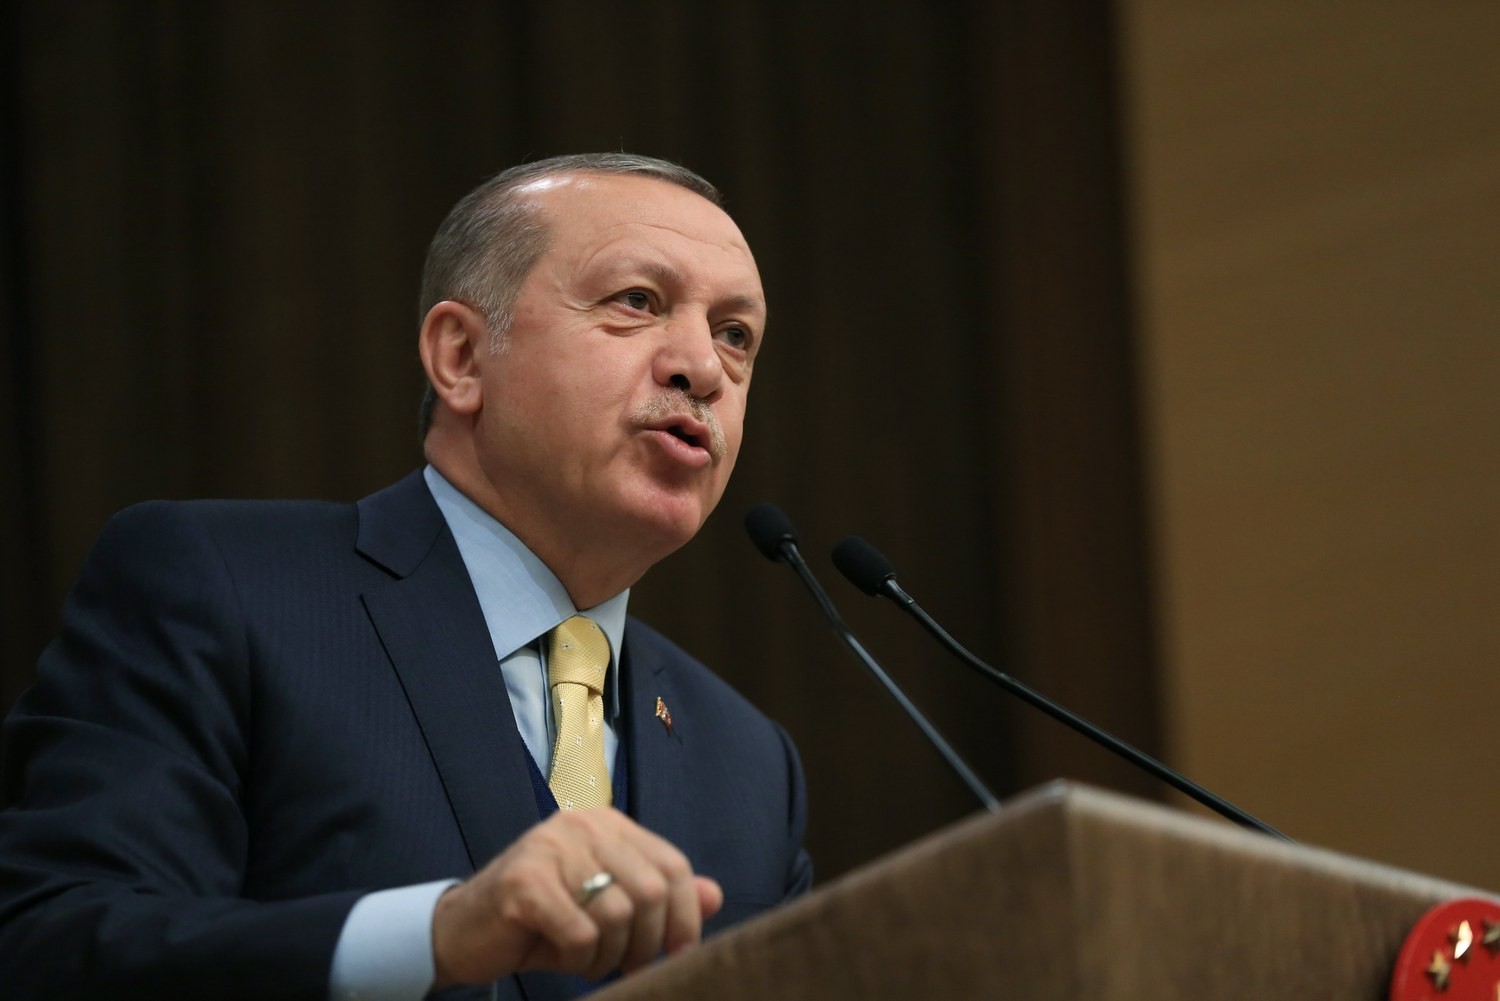 Μεταστροφή Ρ.Τ.Ερντογάν: «Θα ενισχύσουμε την στρατηγική συνεργασία με τις ΗΠΑ»